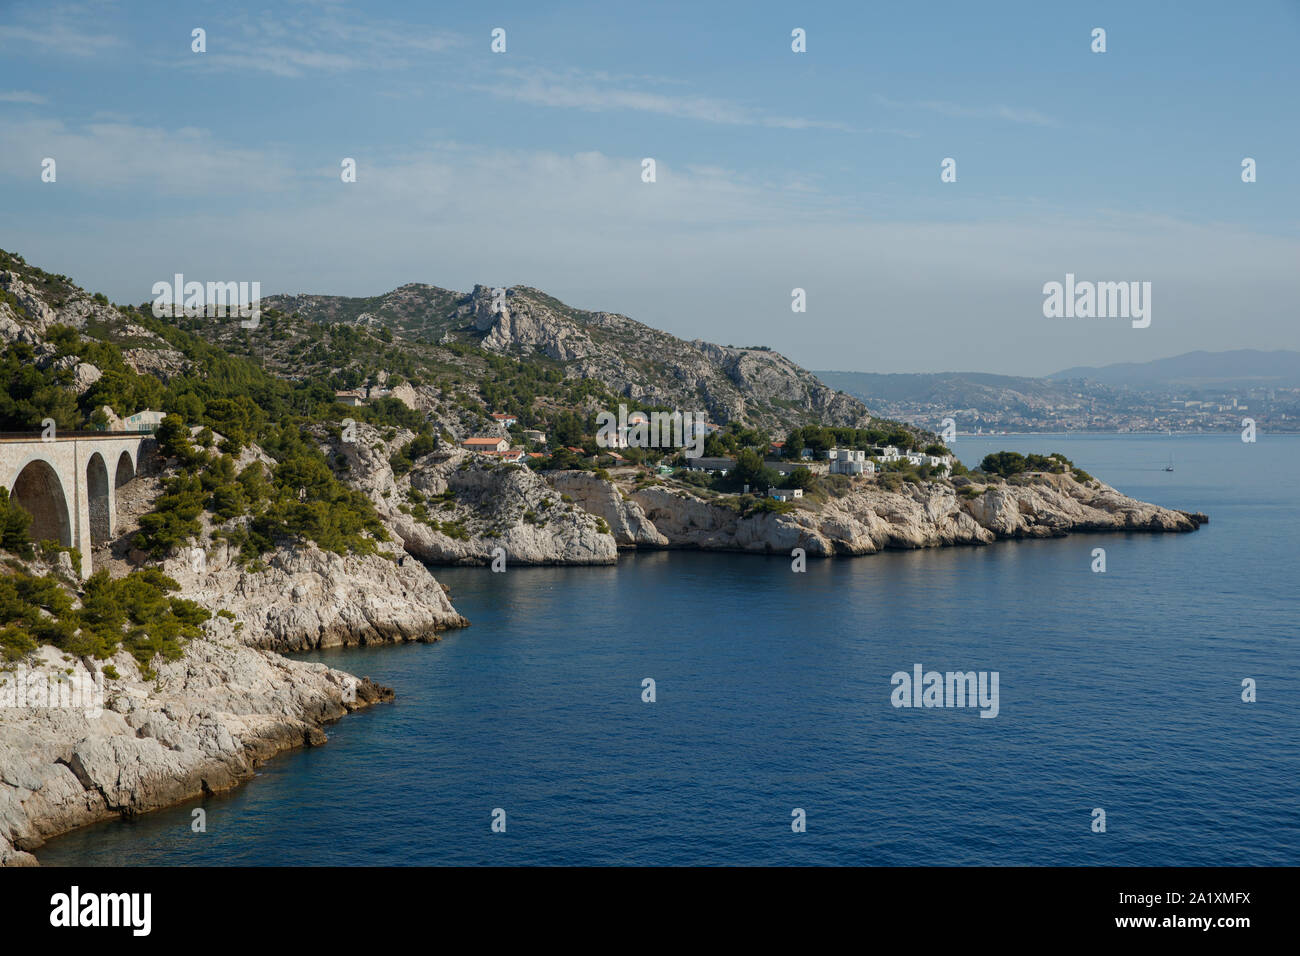 General view of the coastline in Niolon near Marseille Stock Photo